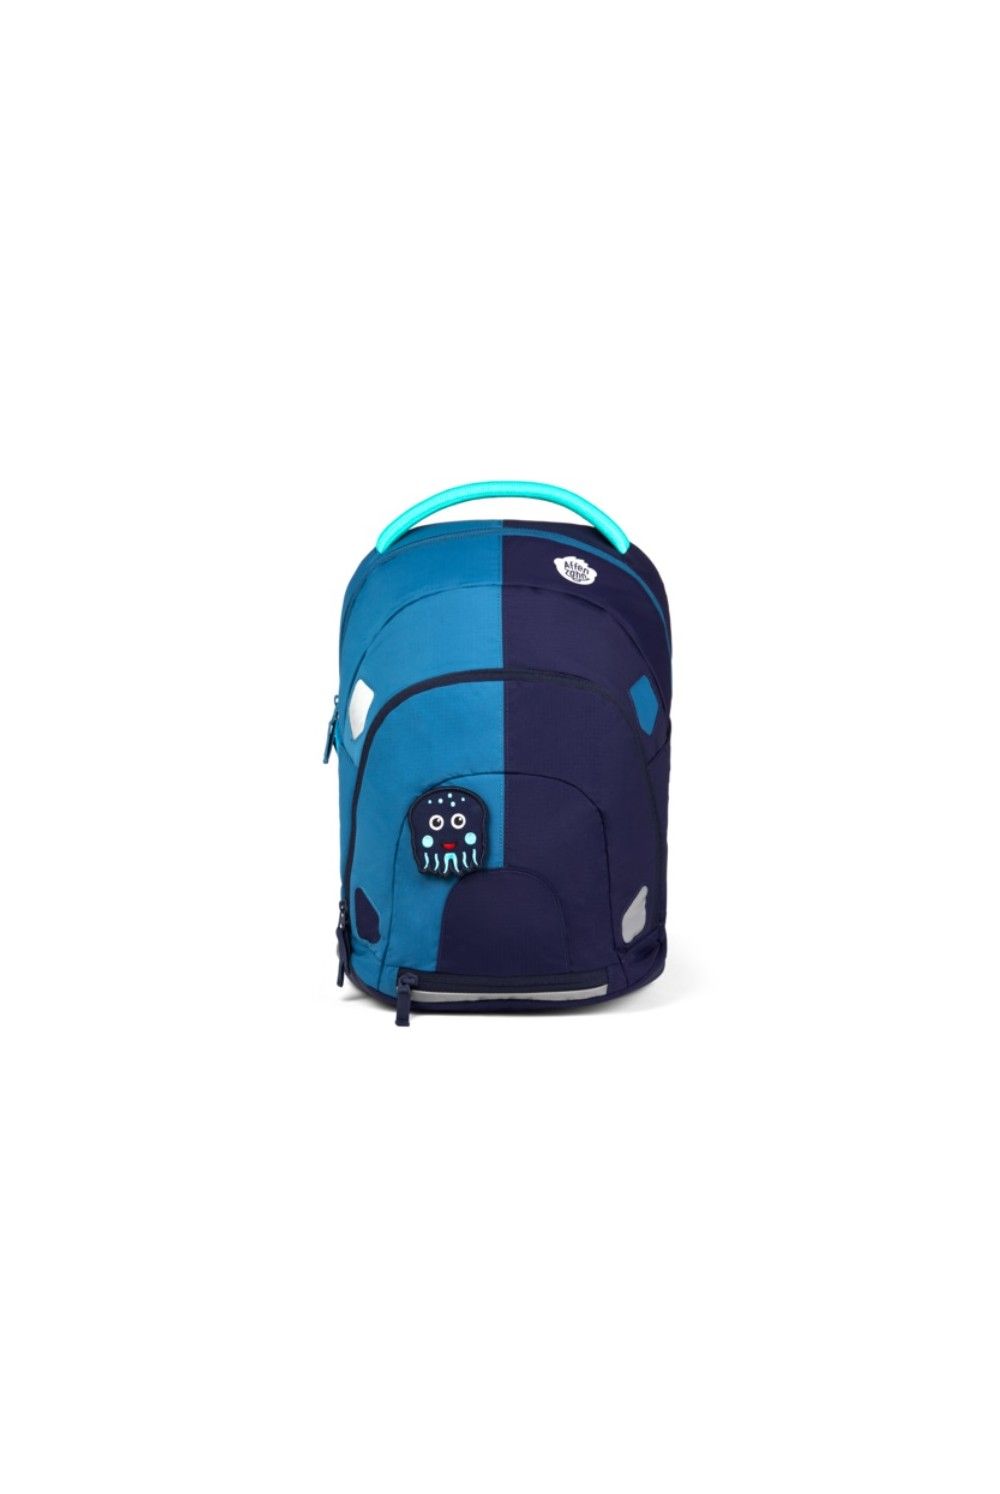 Affenzahn Daydreamer Ripstop Oktopus adventure backpack